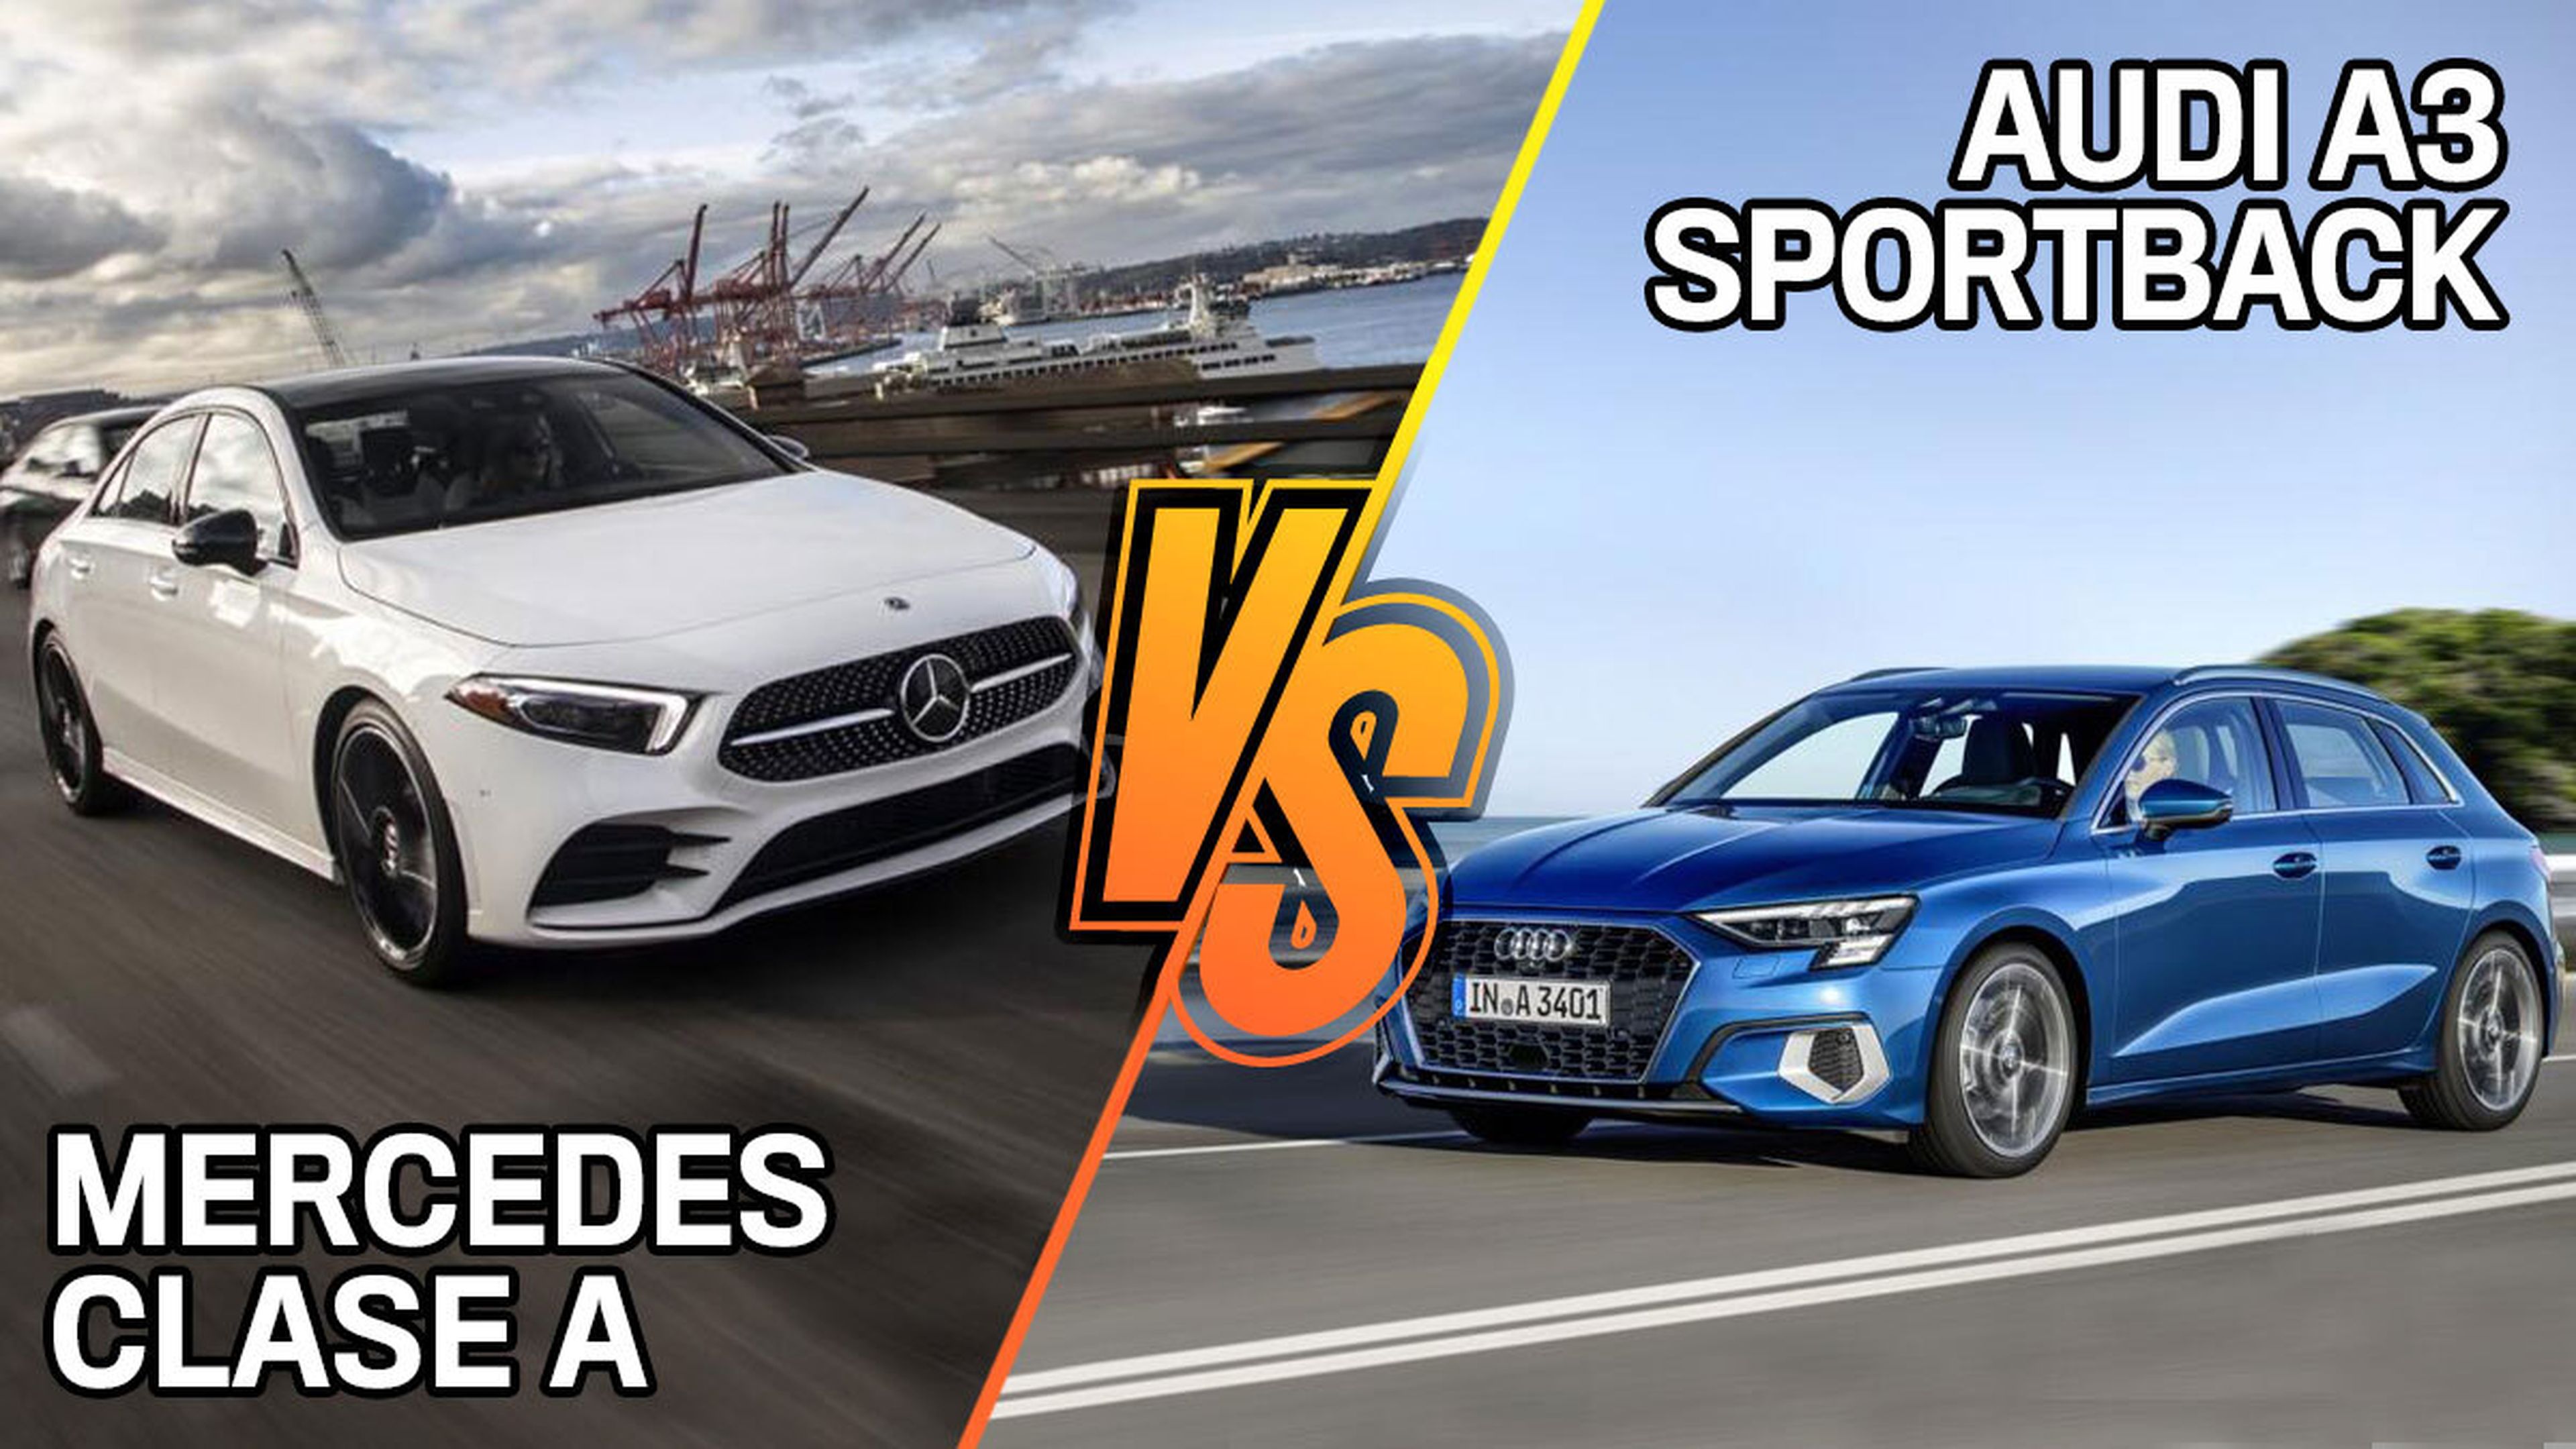 Mercedes Clase A o Audi A3 Sportback 2020, ¿cuál es mejor?